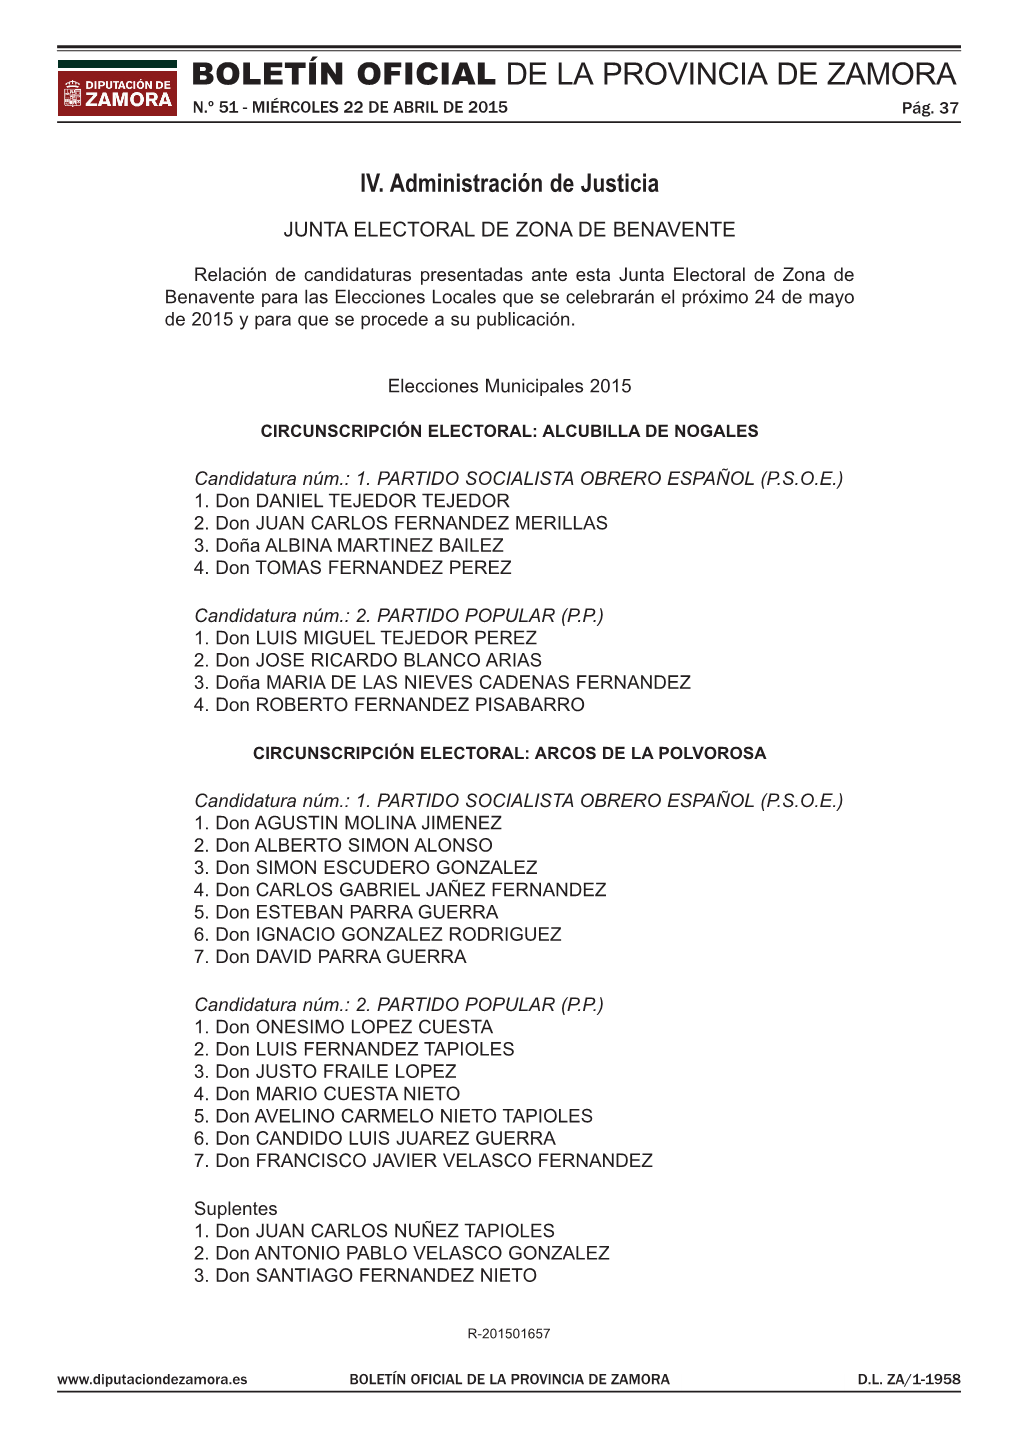 Junta Electoral De Zona De Benavente